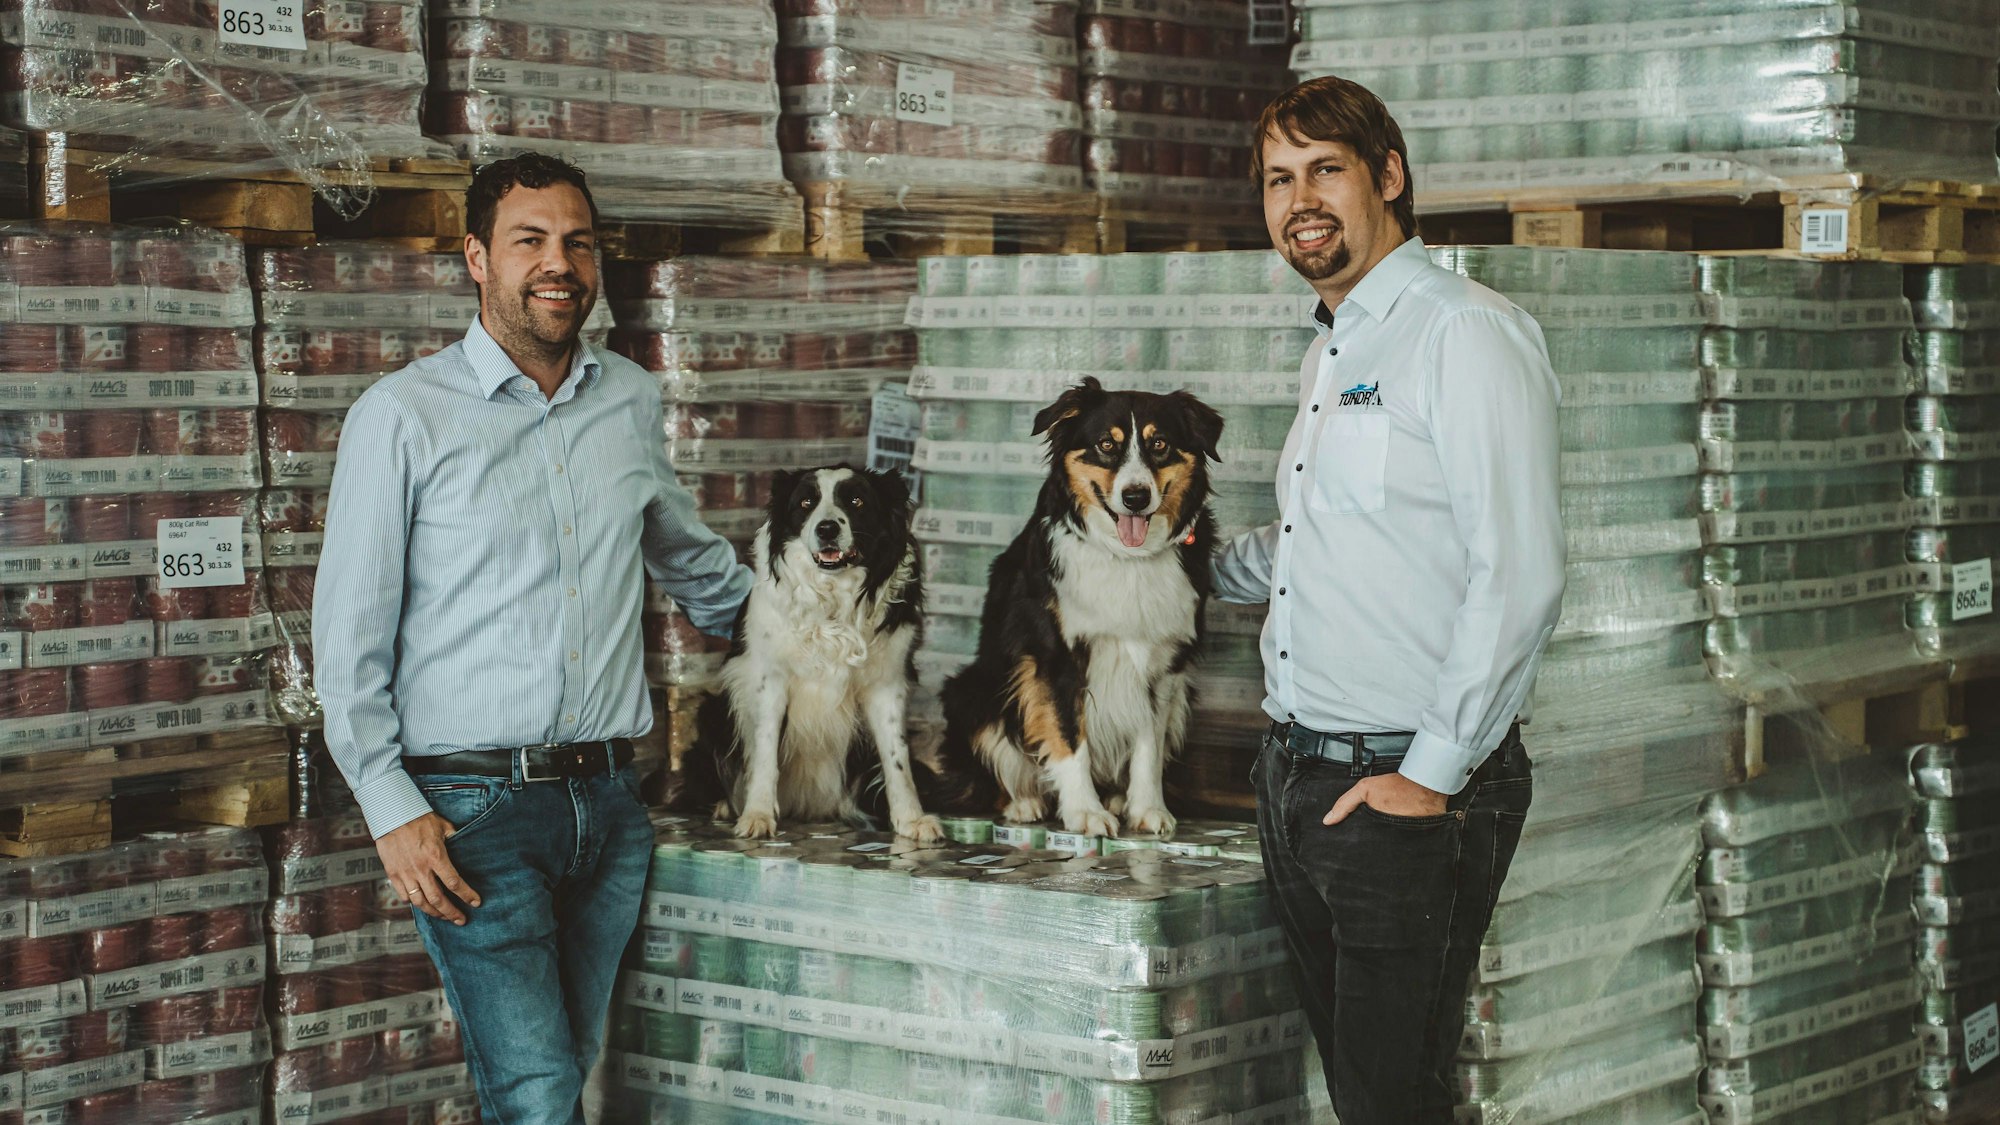 Markus (r.) und Michael Koller sind die Geschäftsführer der Kaller Firma Pro Pet. Auf dem Bild sind sie mit ihren Hunden im Lager mit den auf Paletten gepackten Tiernahrungs-Dosen zu sehen.